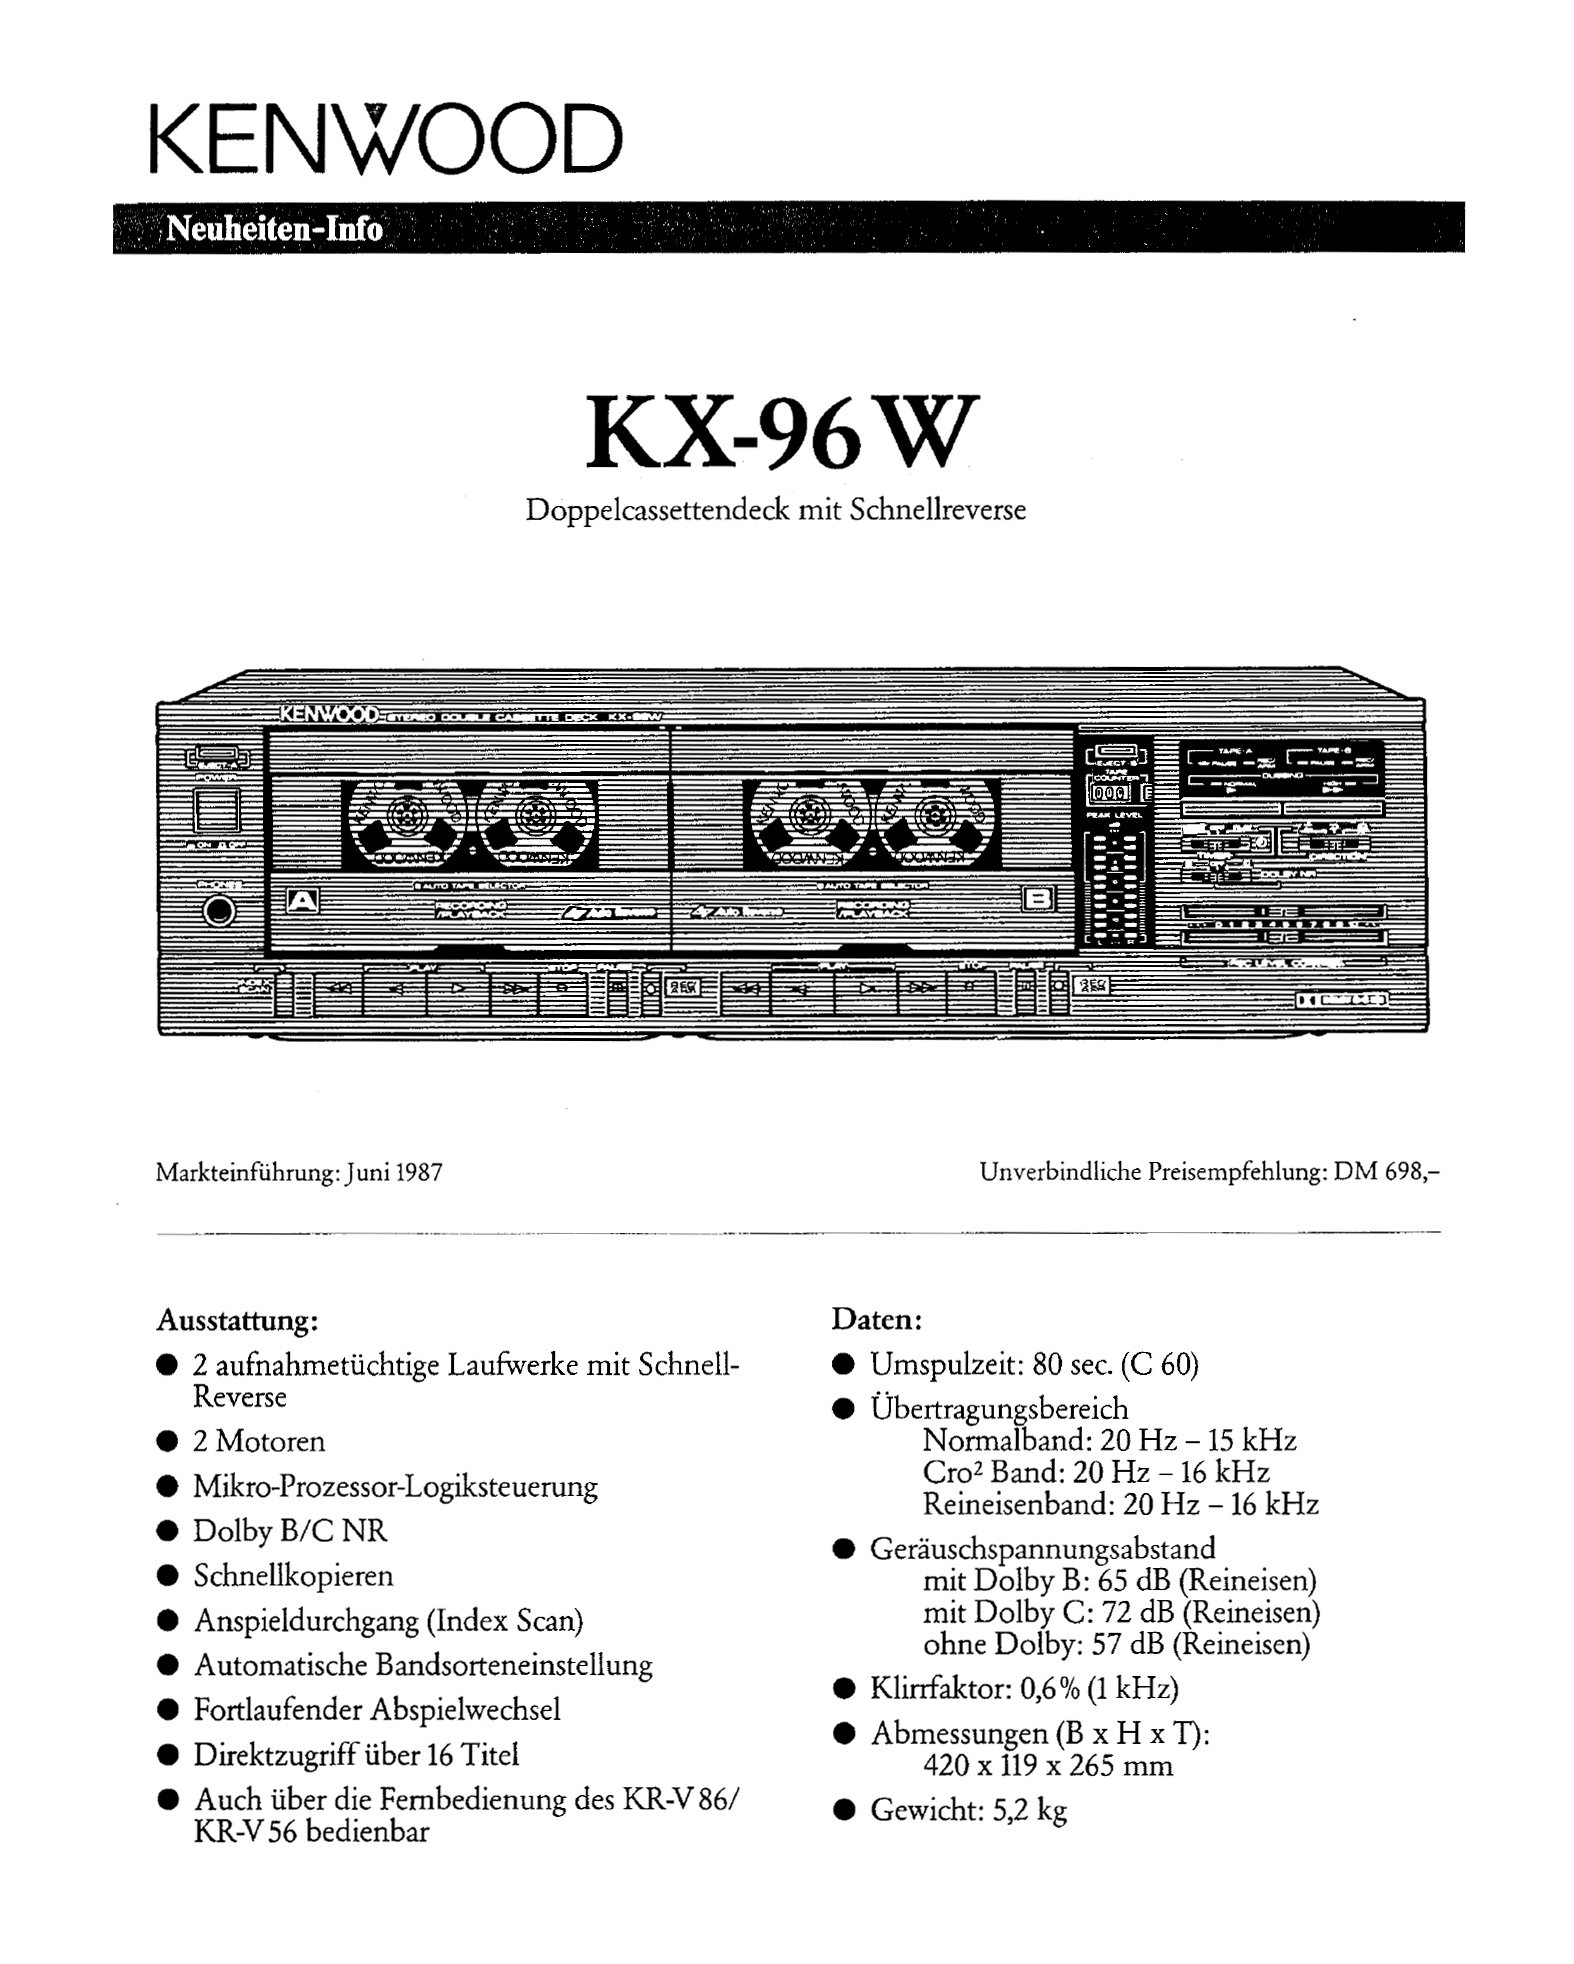 Kenwood KX-96 W-Prospekt-1987.jpg